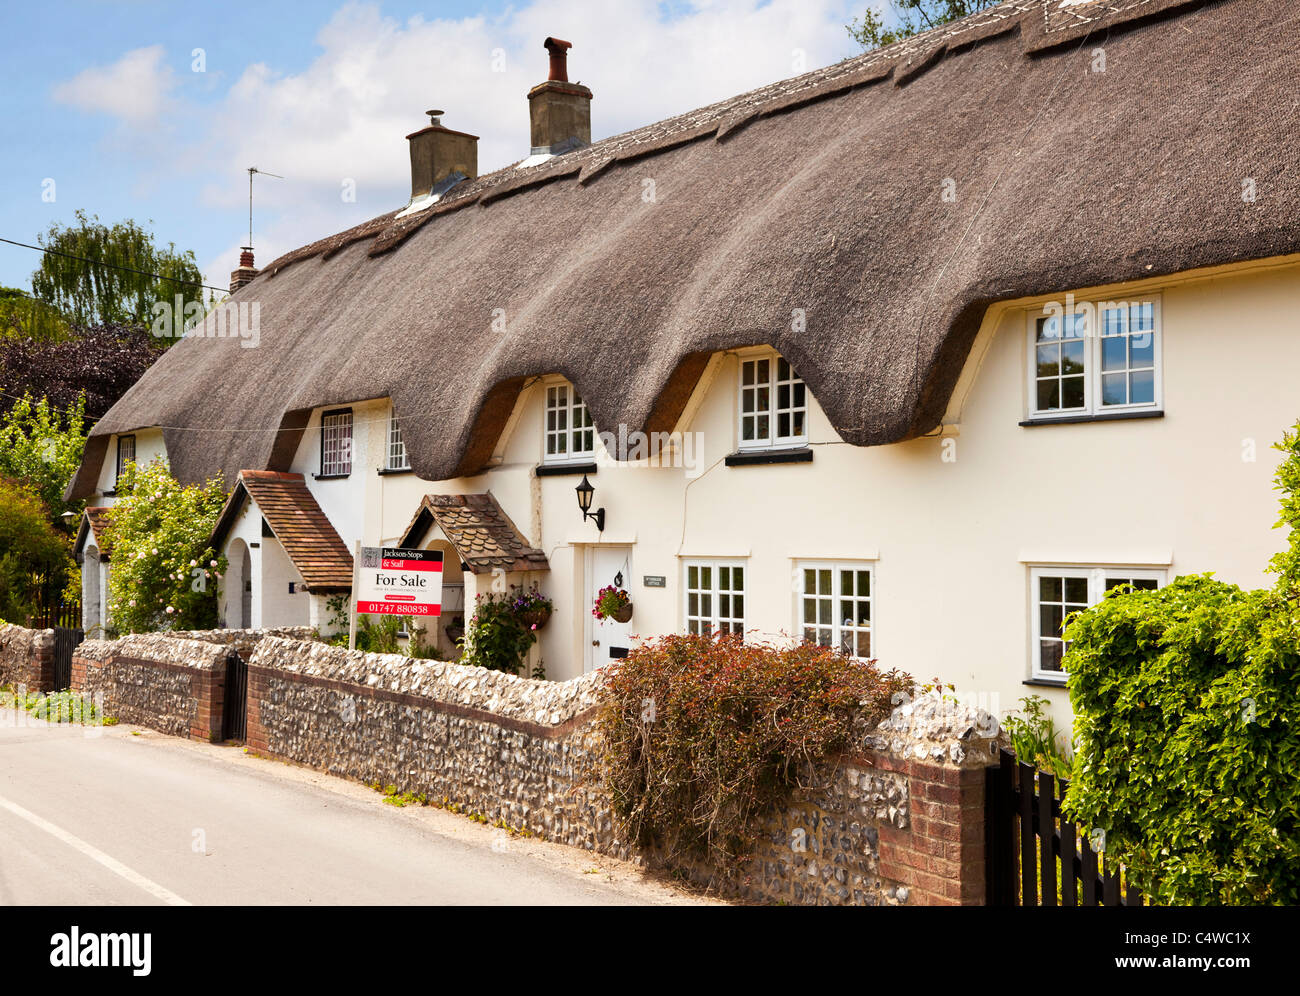 Maison de chaume UK - Old English semi-détaché / terrasse dans un petit village, un cottage de chaume avec un panneau pour la vente, Angleterre UK Banque D'Images